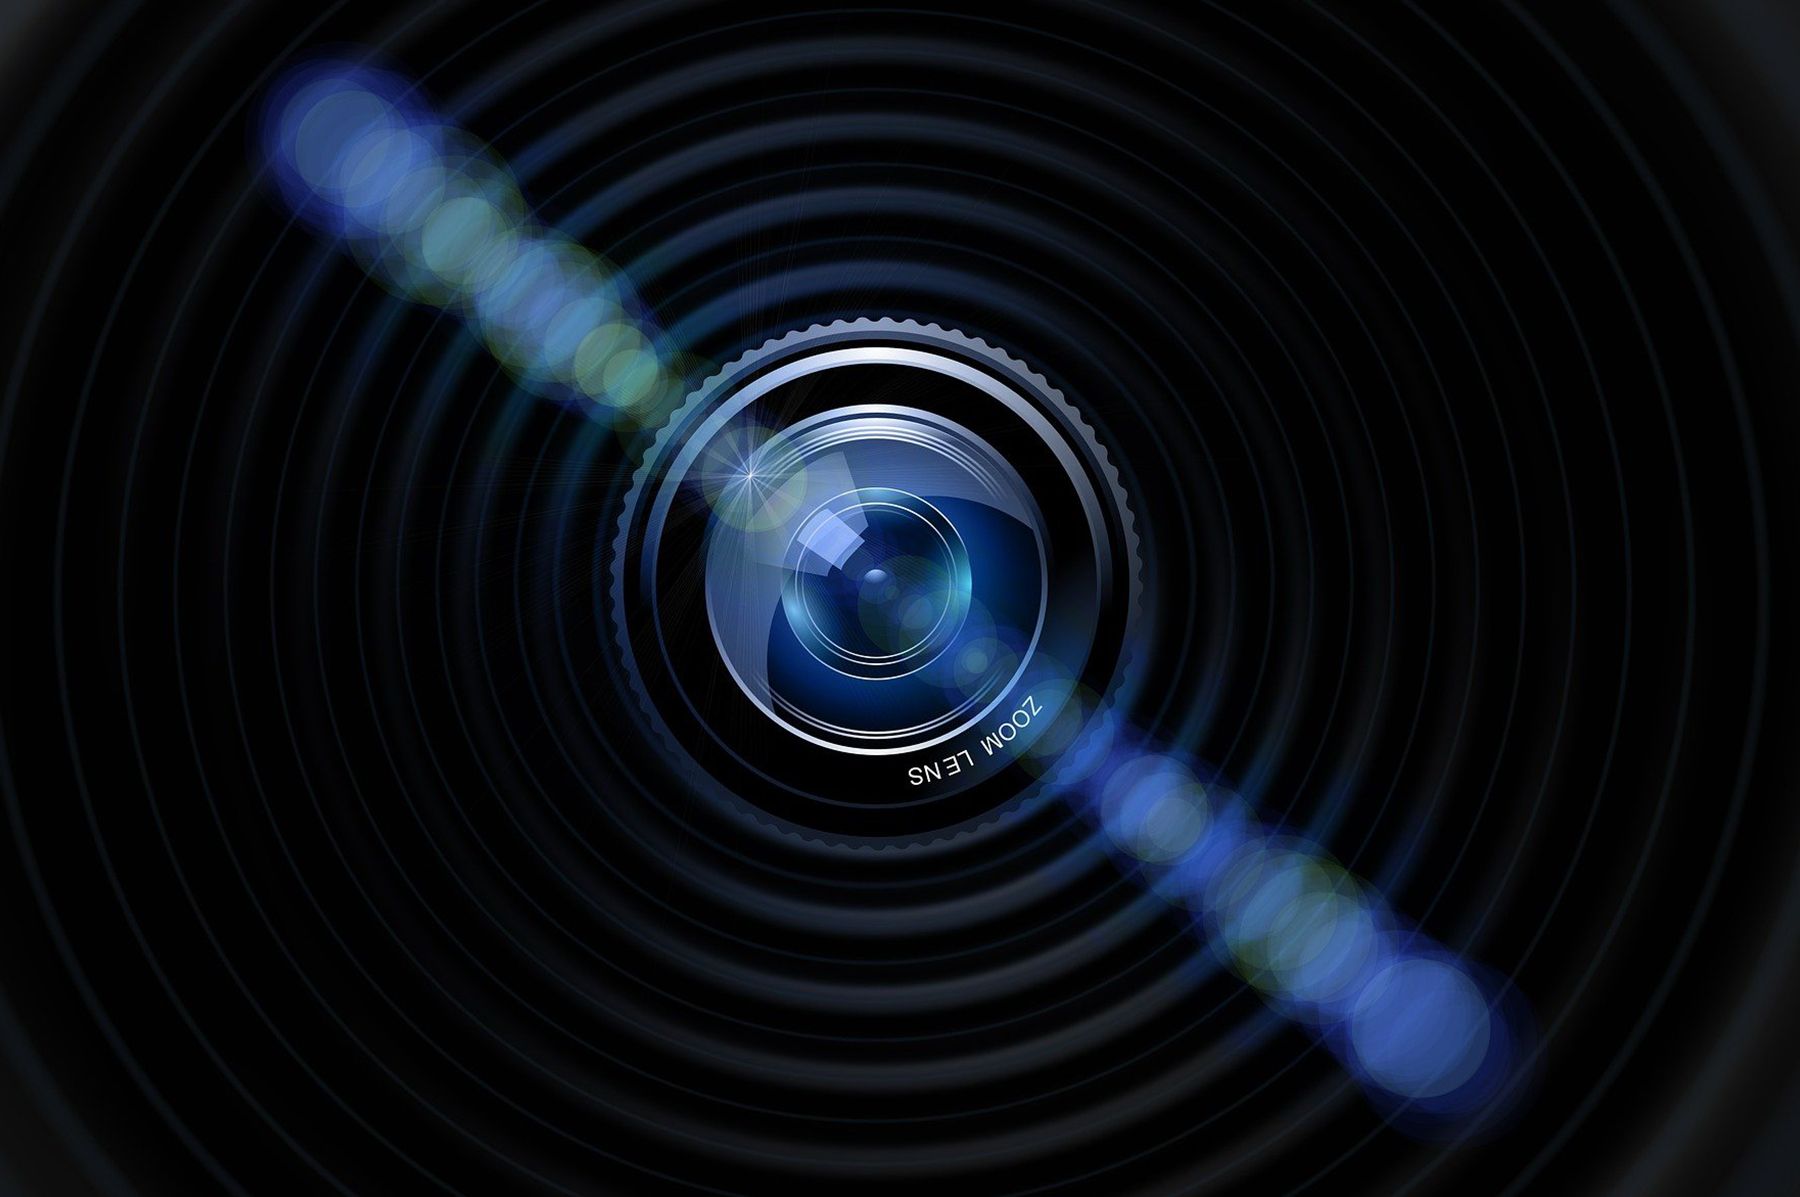 Imagefilm_0001_lens-pixabay.jpg